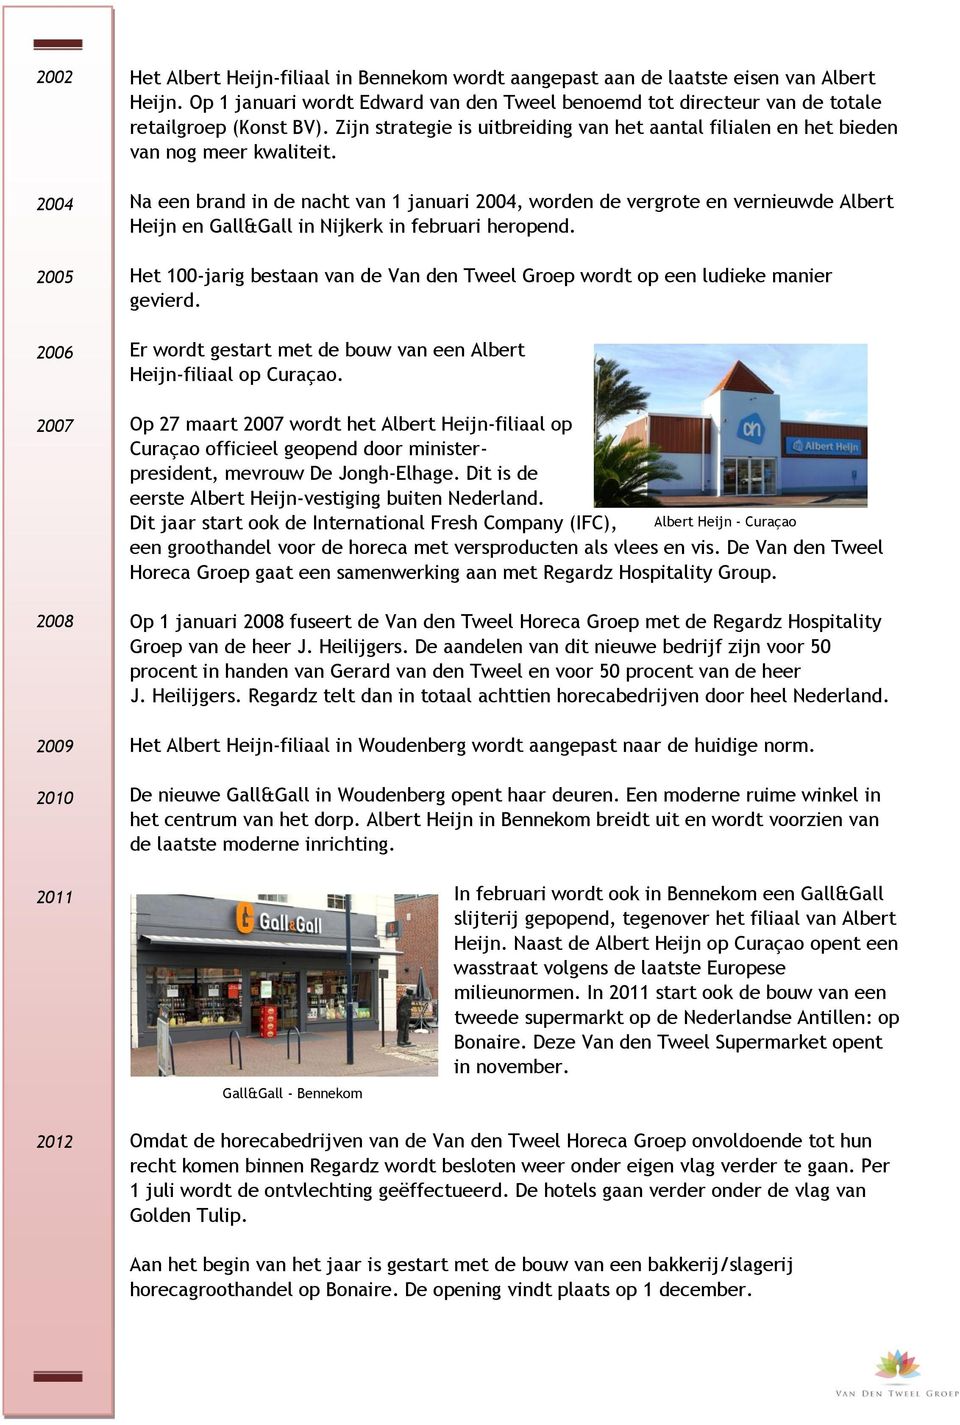 Na een brand in de nacht van 1 januari 2004, worden de vergrote en vernieuwde Albert Heijn en Gall&Gall in Nijkerk in februari heropend.